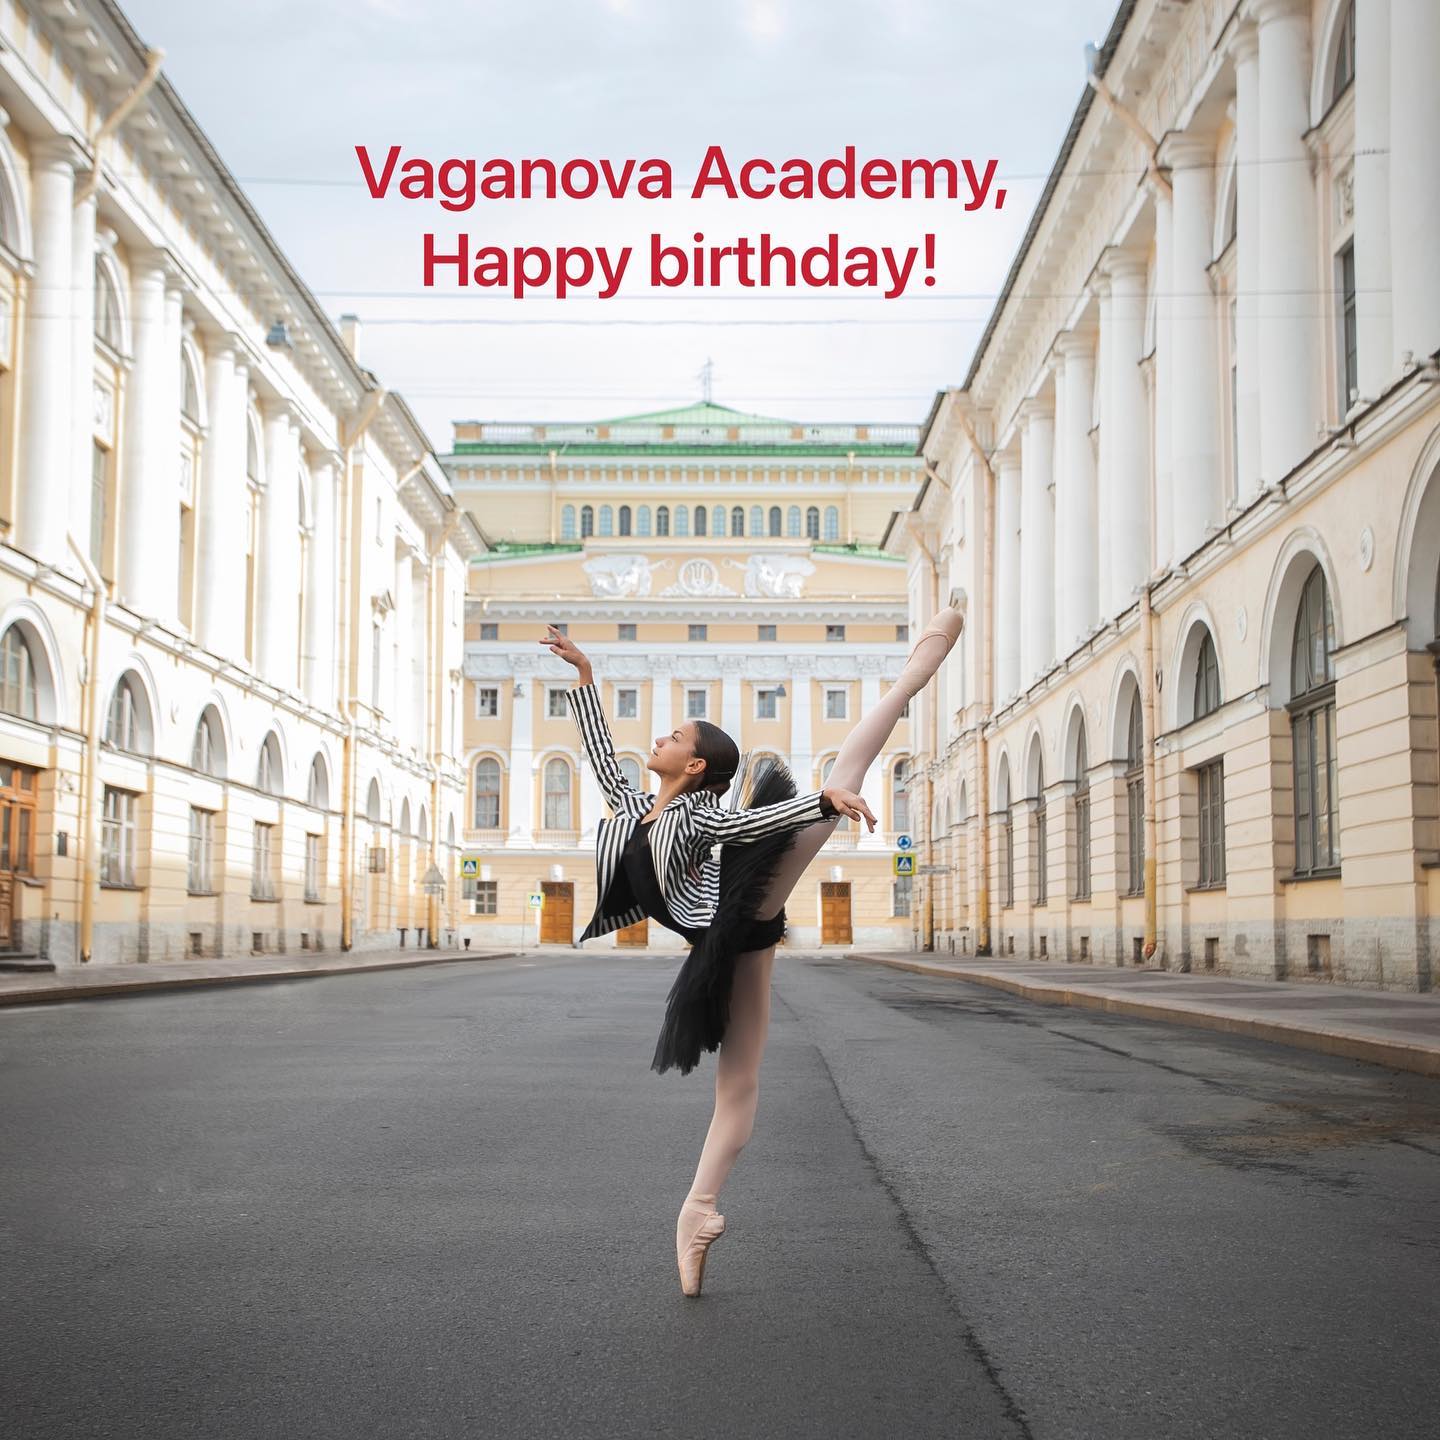 Академия Вагановой, с днем рождения!